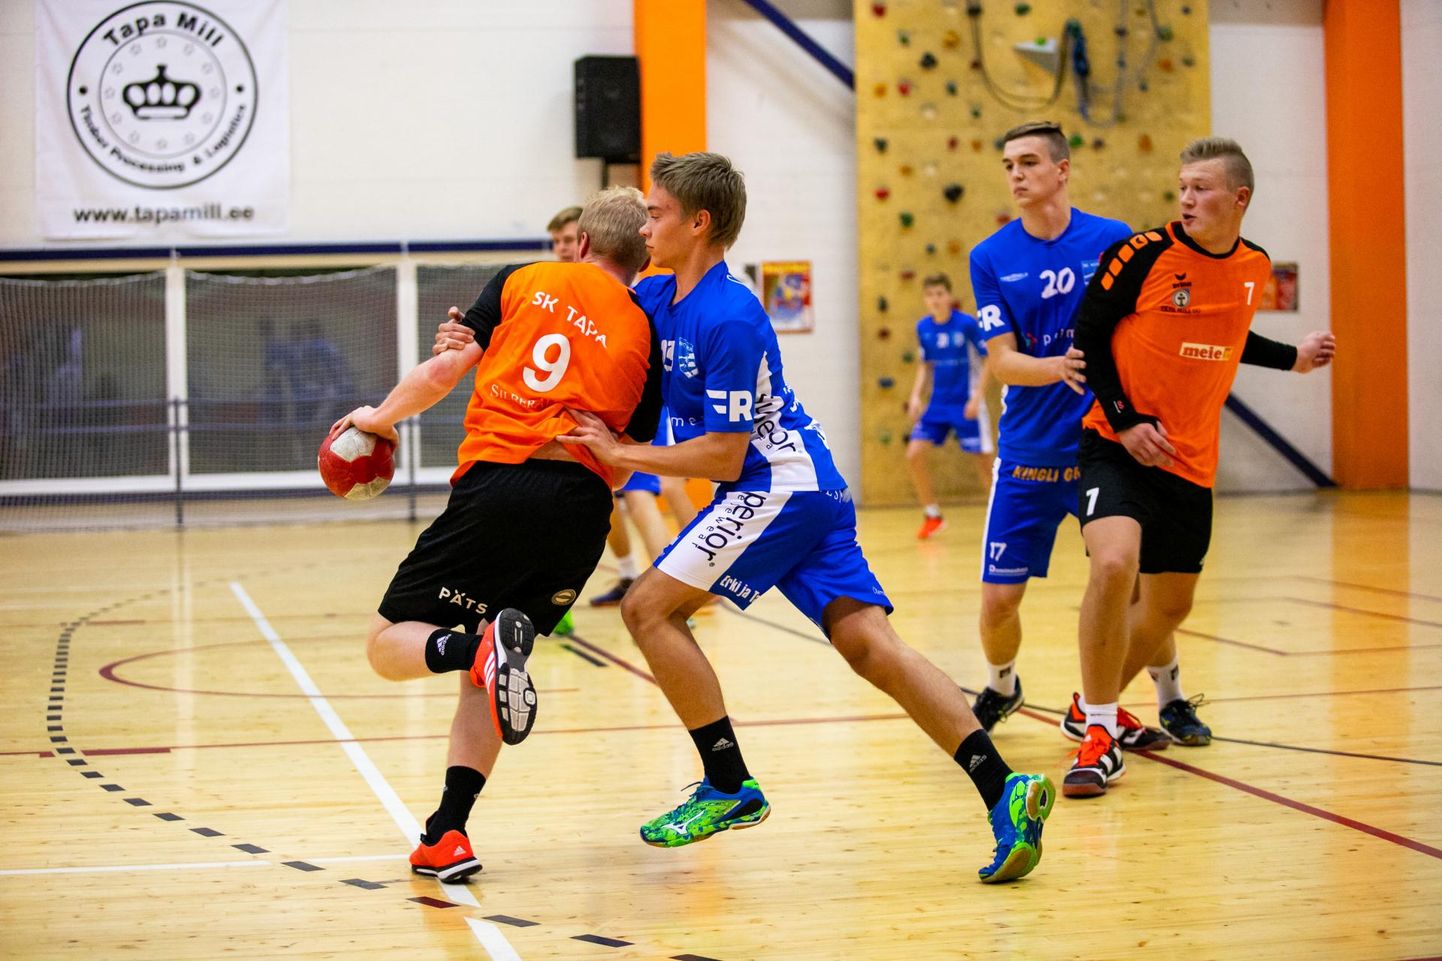 Spordiklubi Tapa käsipallimeeskond alistas kolmapäeval võõrsil Eesti meistriliiga käsipallilahingus kindlalt, 35:19 (poolaeg 14:9) Aruküla/Audentese meeskonna.